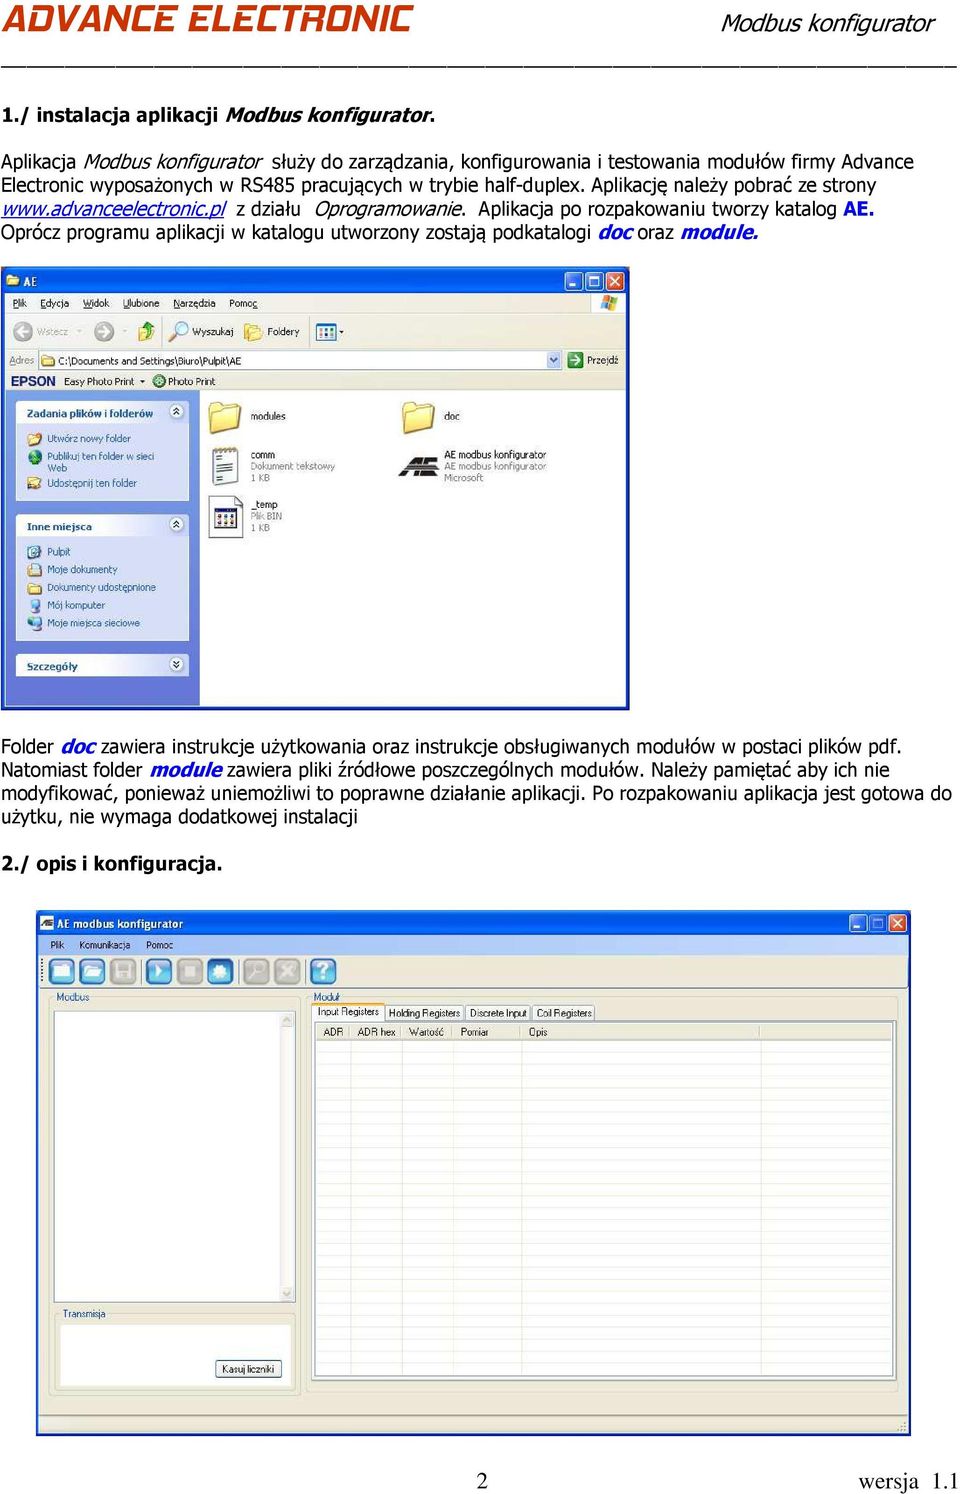 Oprócz programu aplikacji w katalogu utworzony zostają podkatalogi doc oraz module. Folder doc zawiera instrukcje użytkowania oraz instrukcje obsługiwanych modułów w postaci plików pdf.